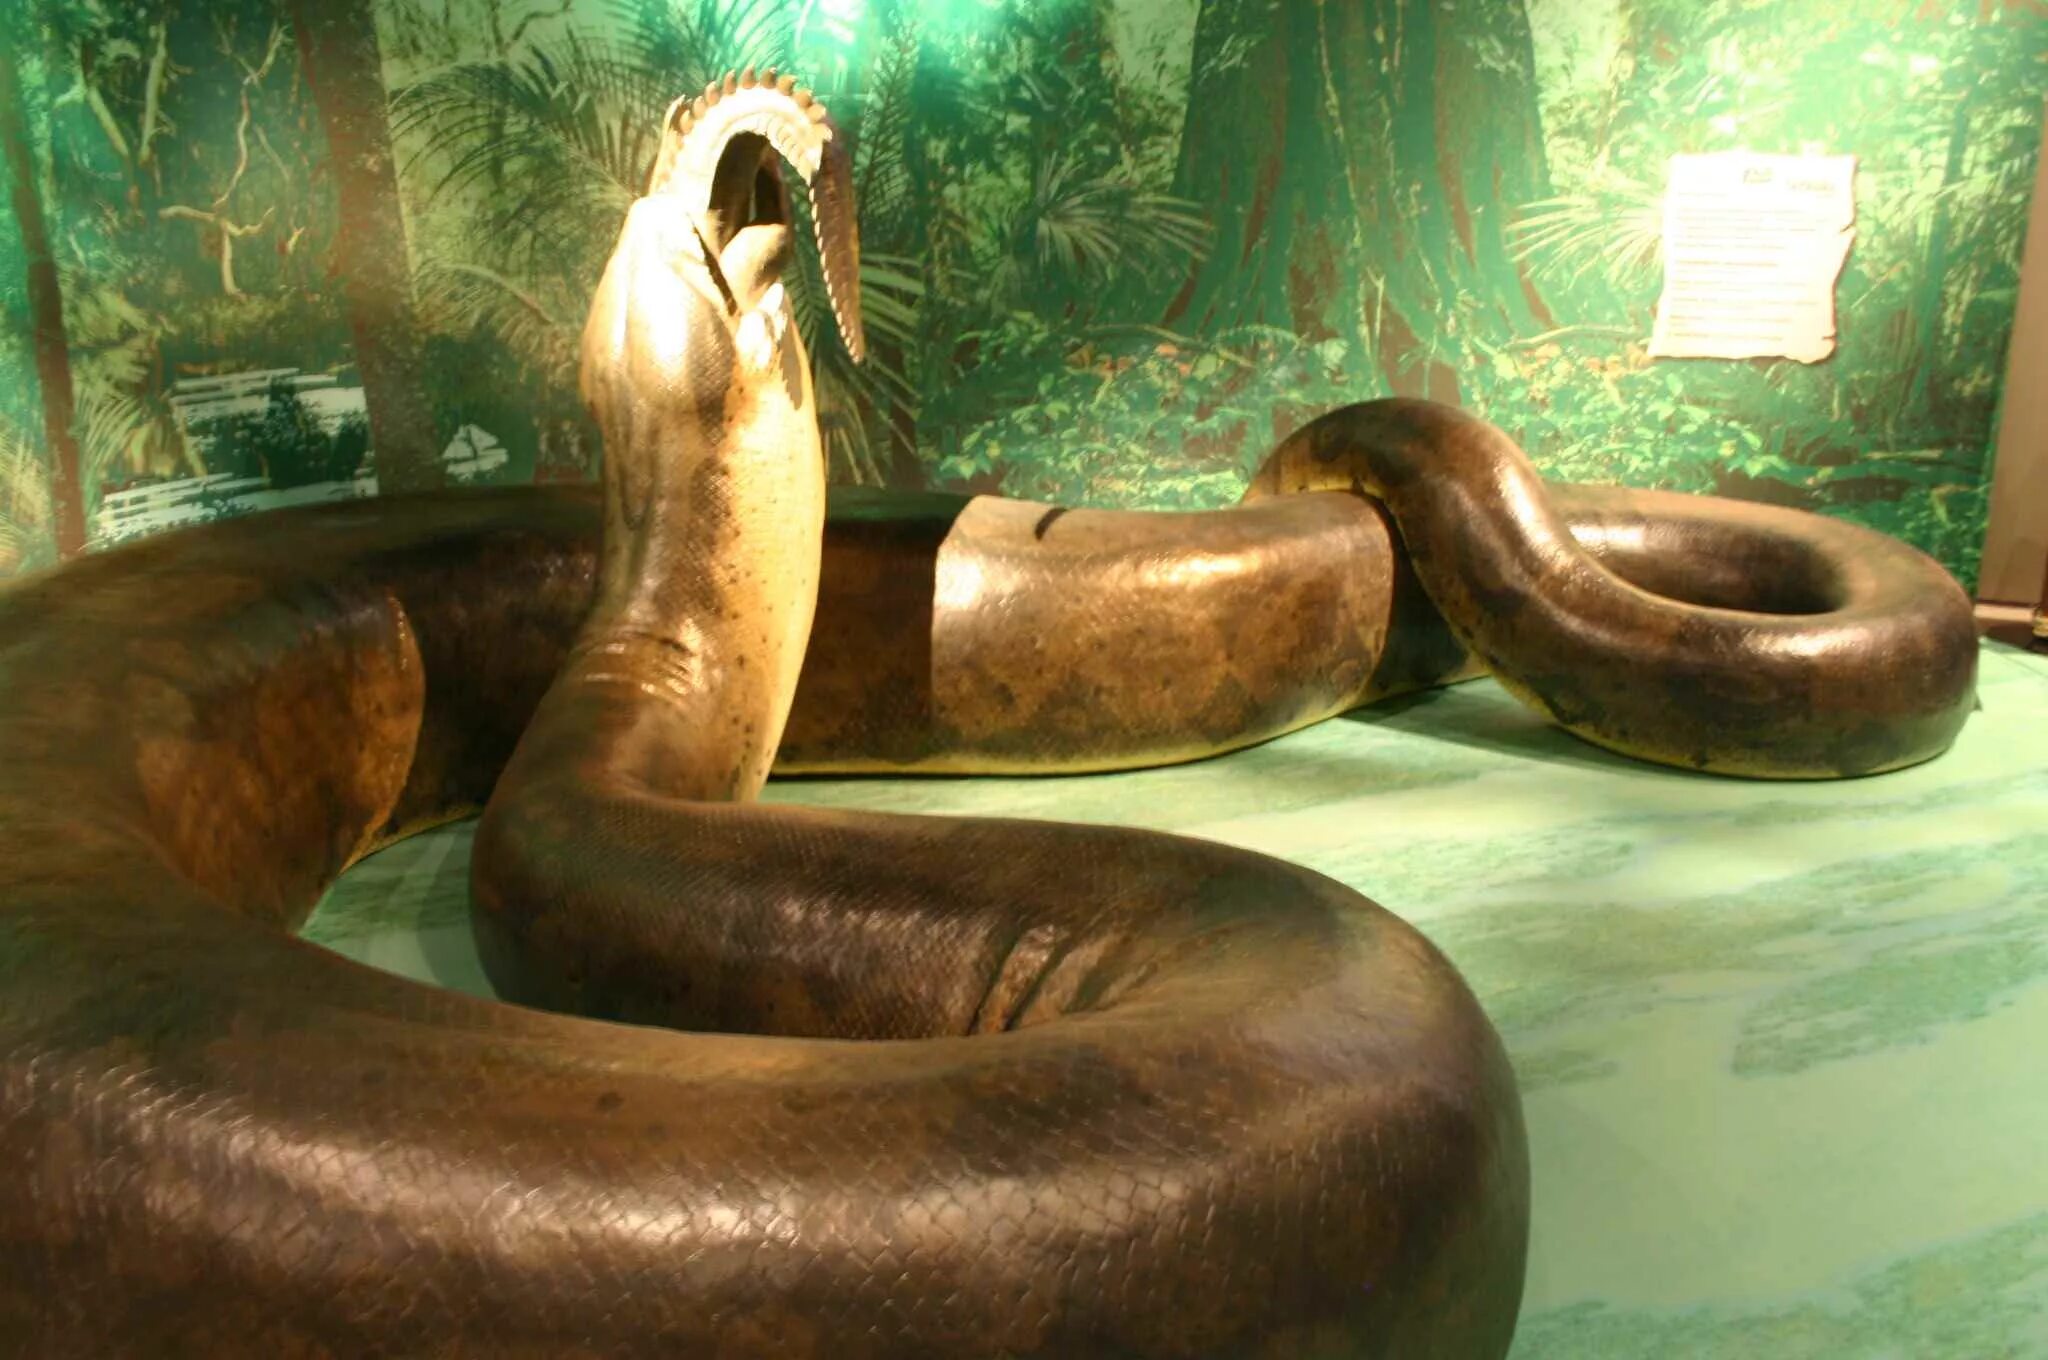 ТИТАНОБОА змея и Анаконда. Титаноба змея ТИТАНОБОА. Самая большая змея в мире ТИТАНОБОА.